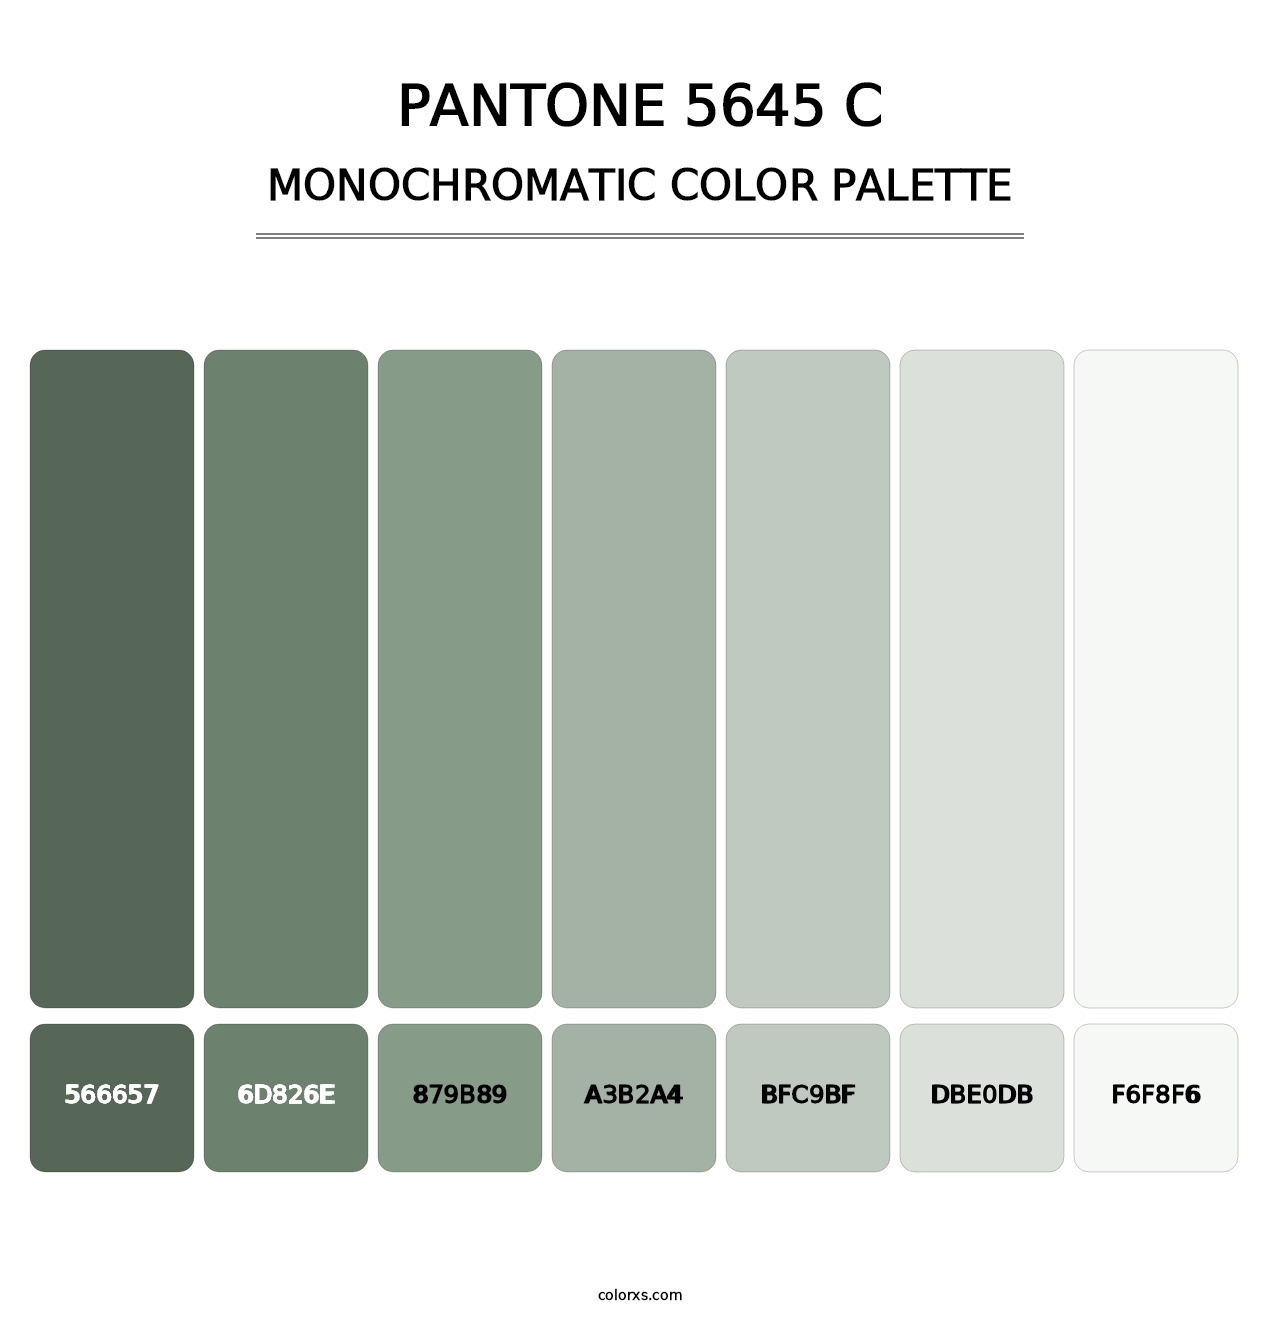 PANTONE 5645 C - Monochromatic Color Palette